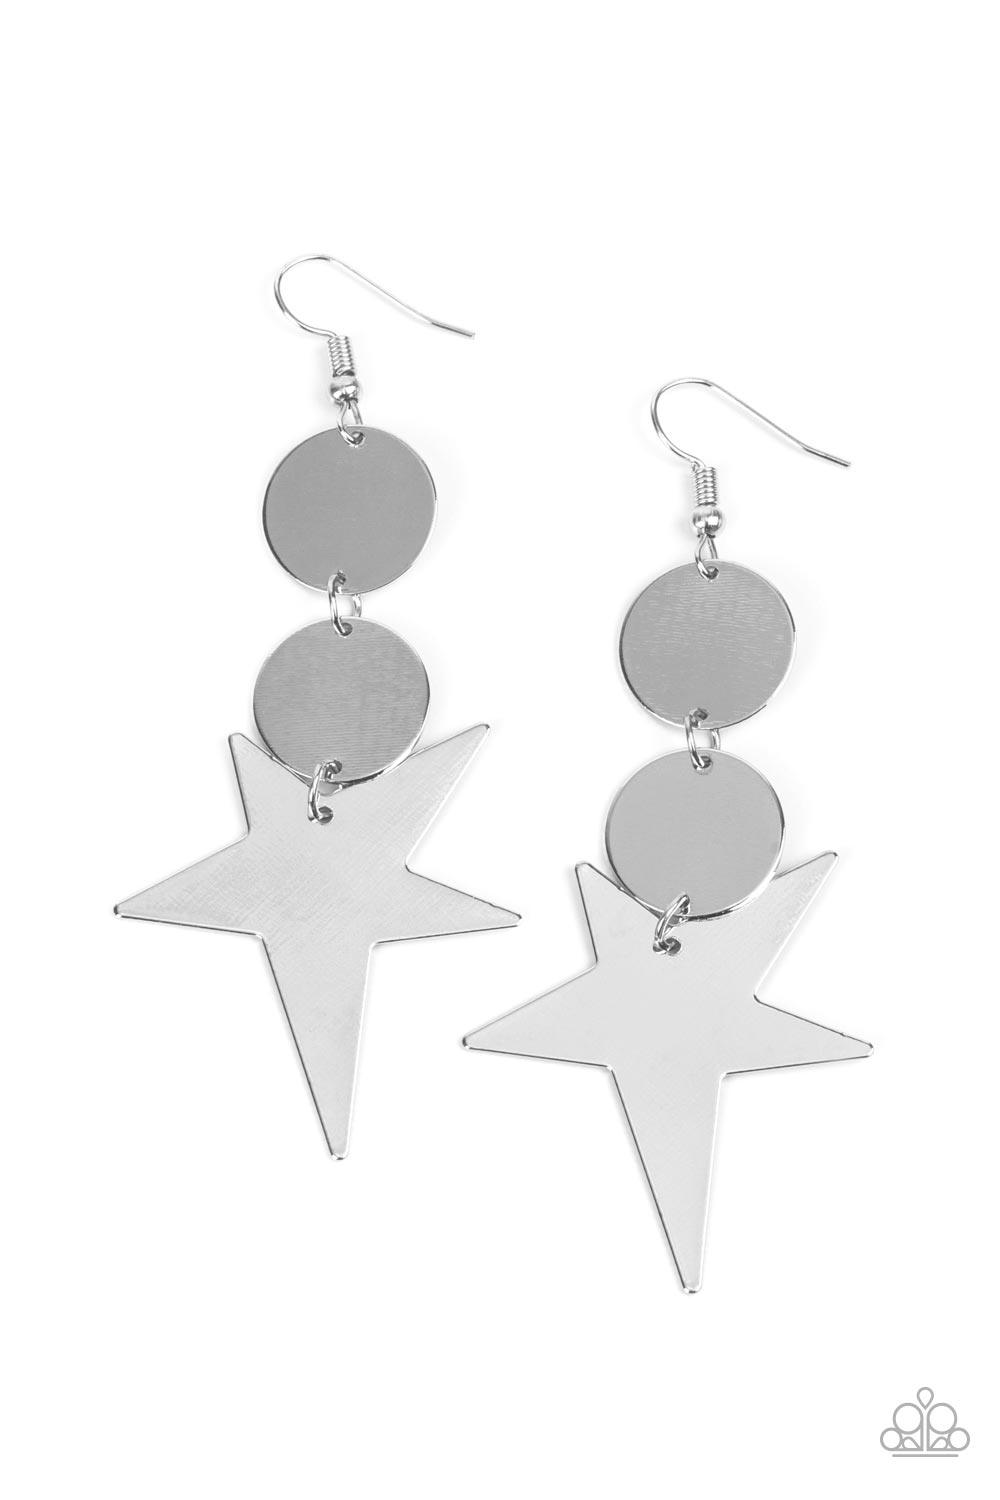  Silver Star Earrings Dangle Silver Star Jewelry